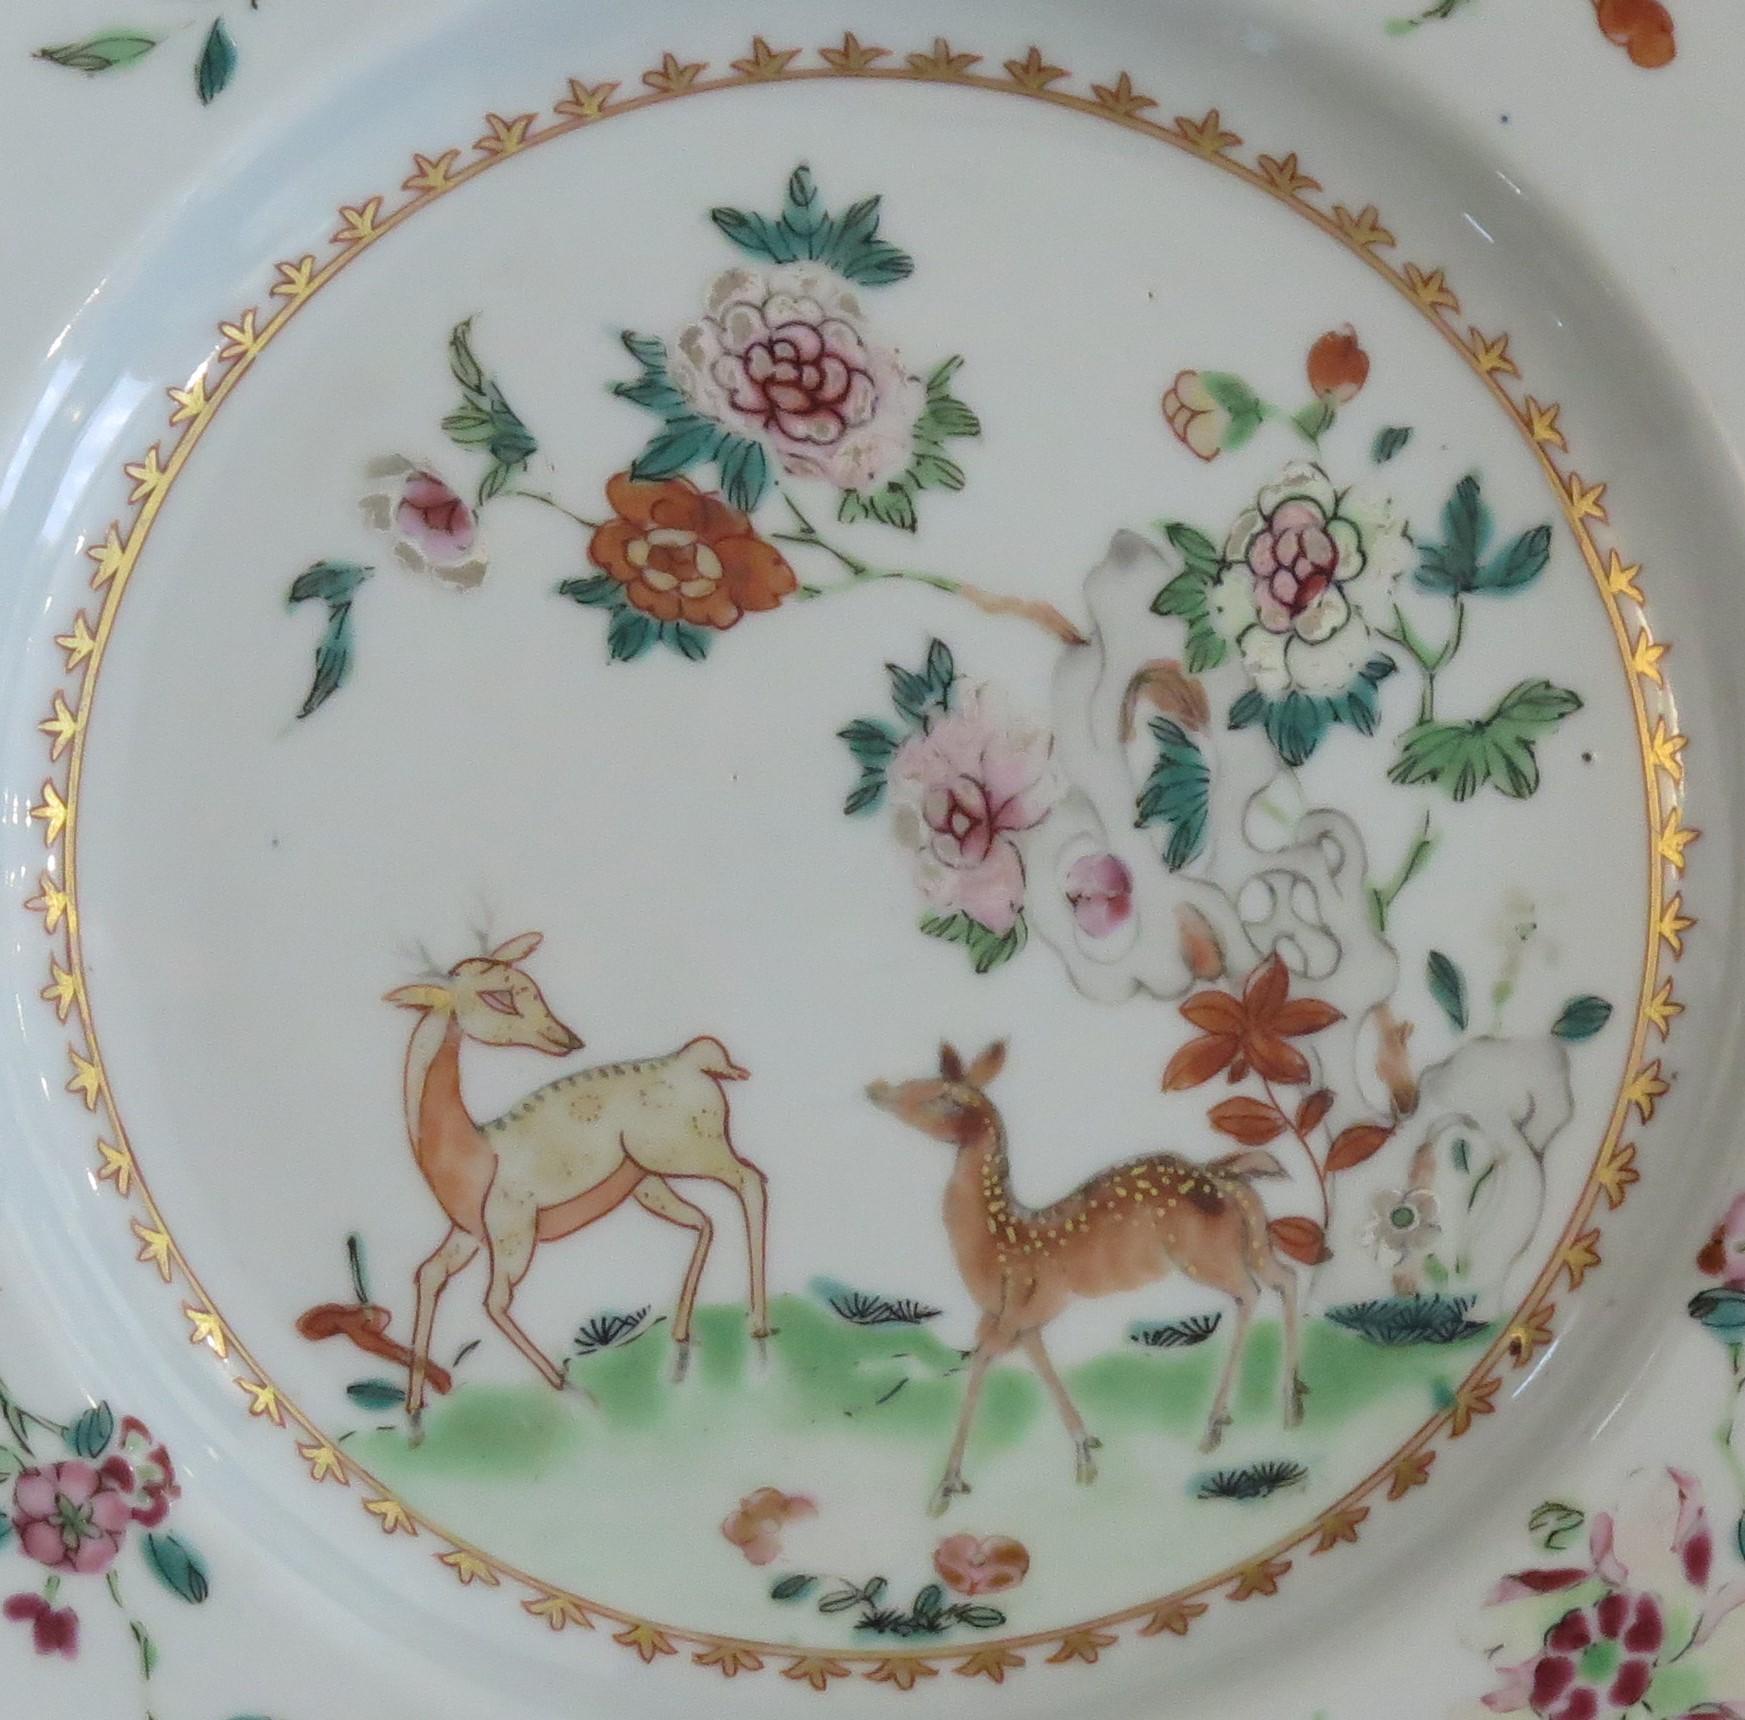 Il s'agit d'un magnifique exemple d'assiette en porcelaine chinoise du XVIIIe siècle, peinte à la main, que nous datons de la période Qing, Yongzheng (1723-1735) ou du tout début de la période Qianlong.

L'assiette est délicatement décorée à la